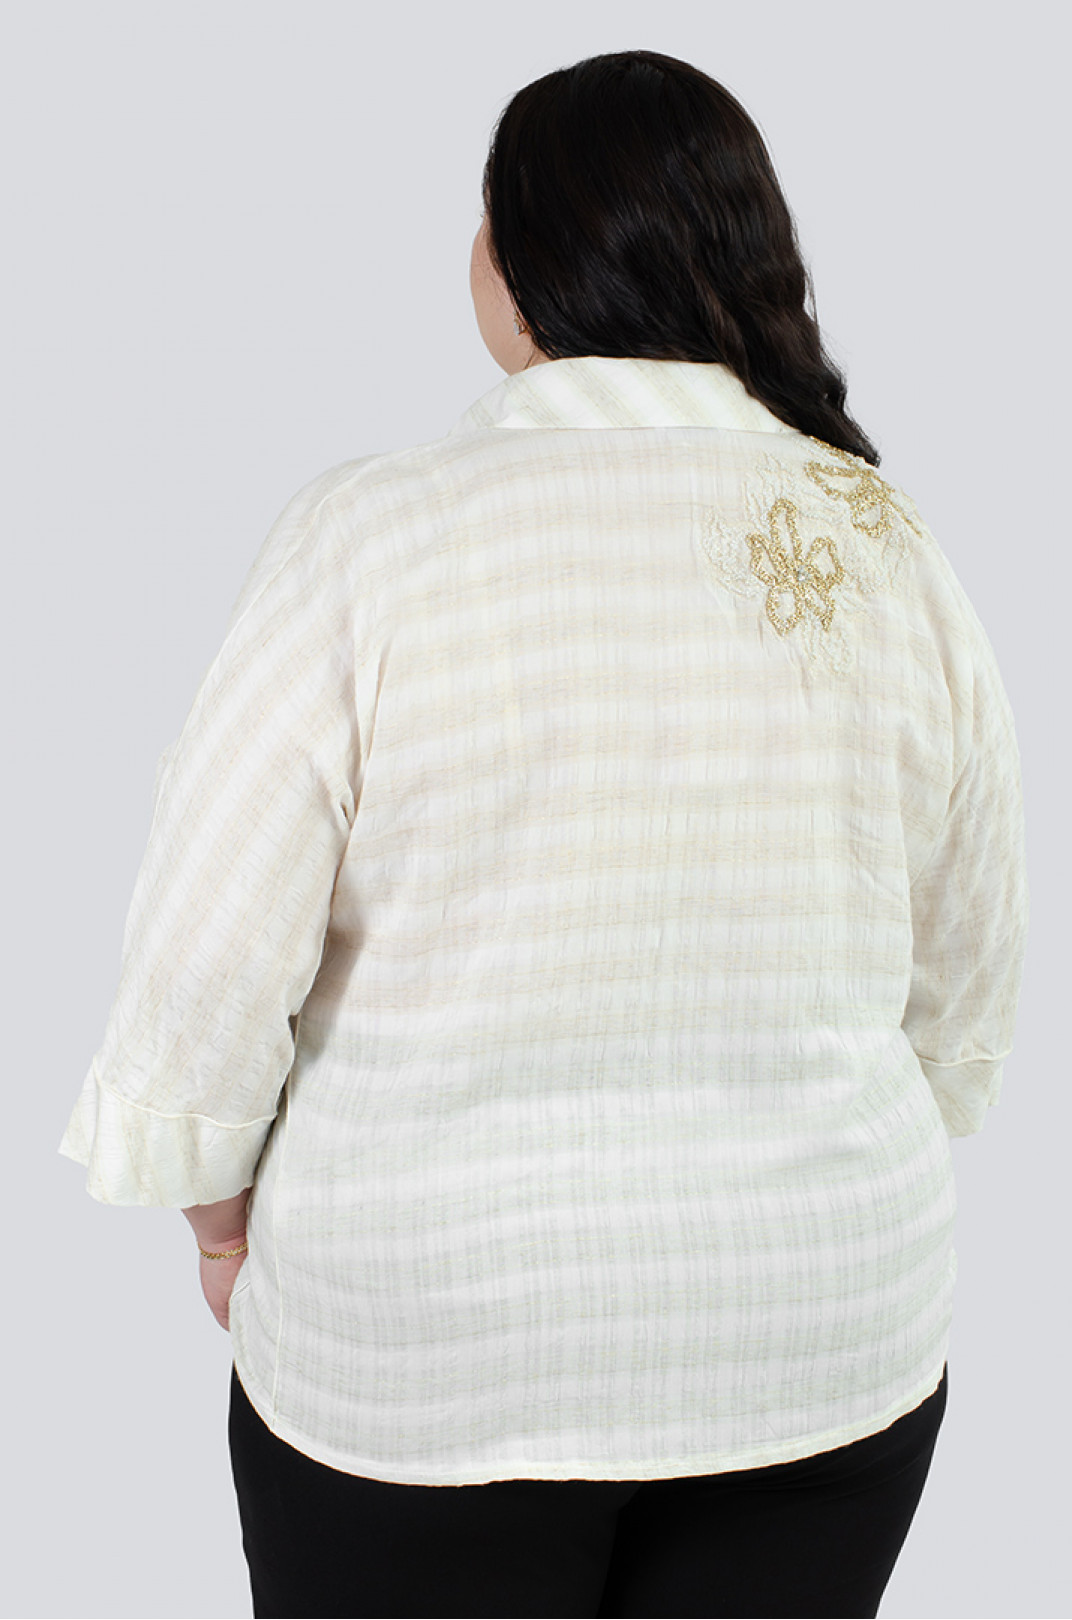 Нежная кремовая блуза с декором больших размеров